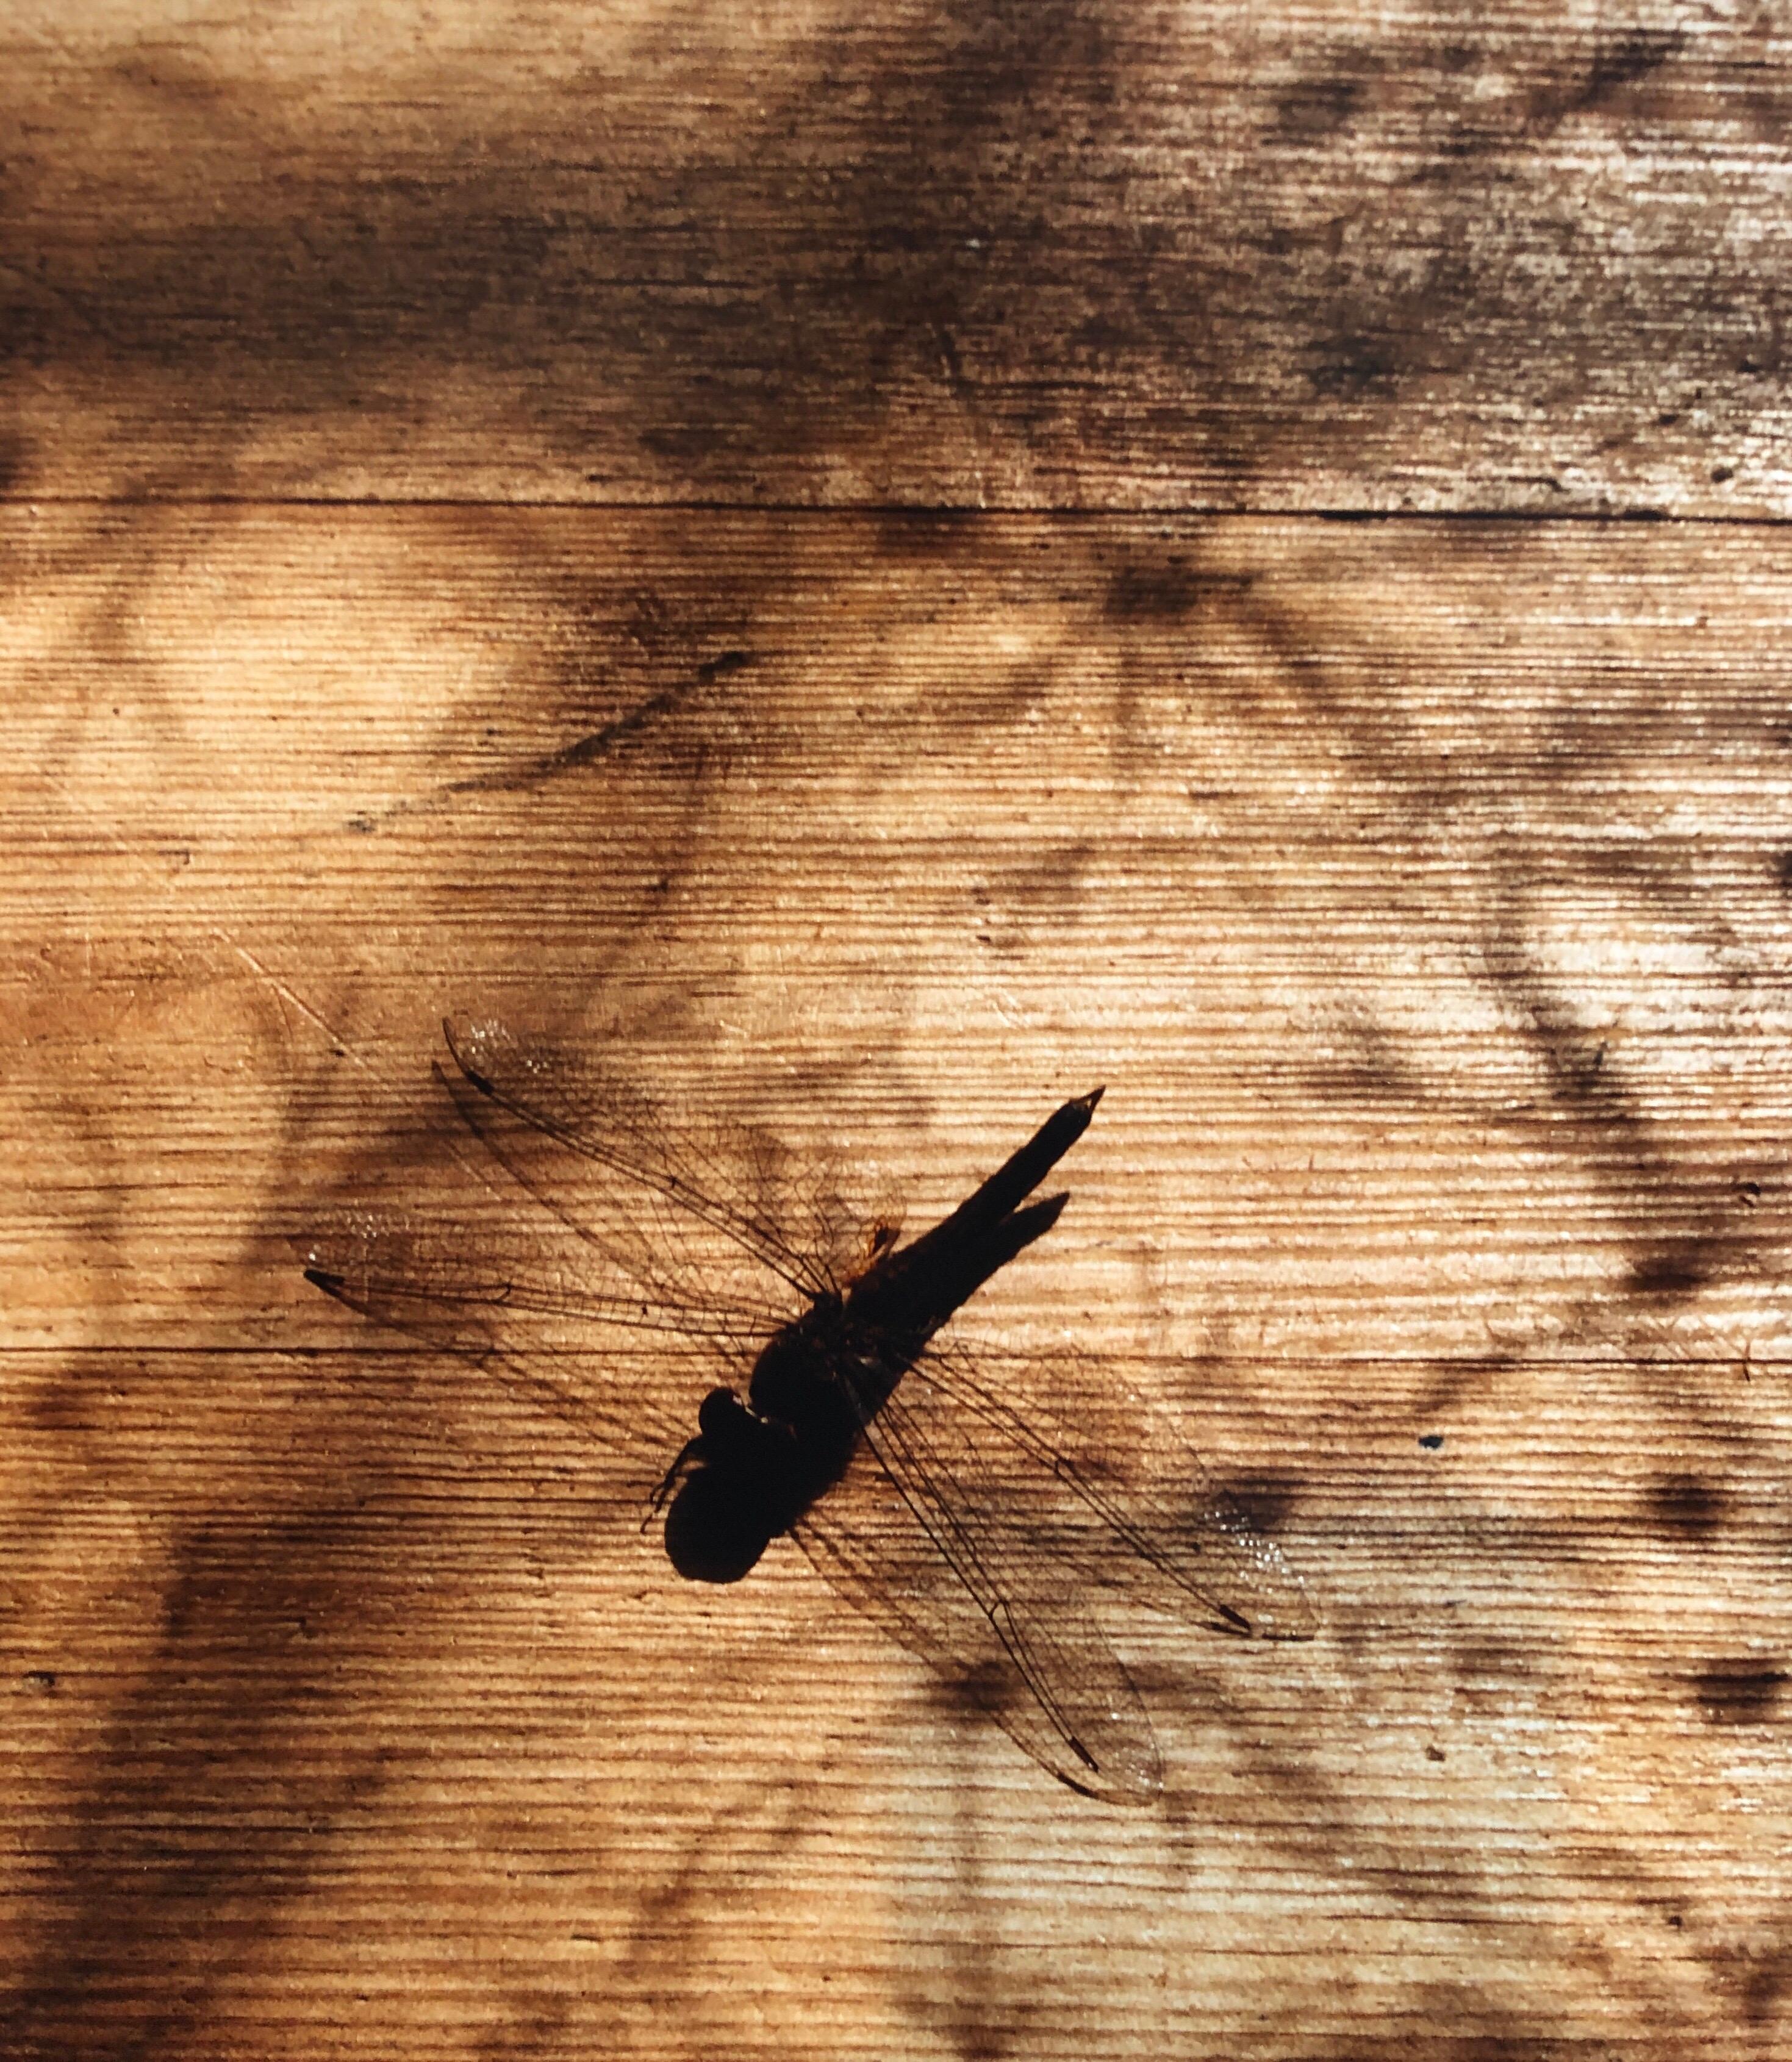 Dragonfly, Großformatiges Foto 24X20 Farbfotografie Strandhaus mit Libellen – Photograph von Peter C. Jones 